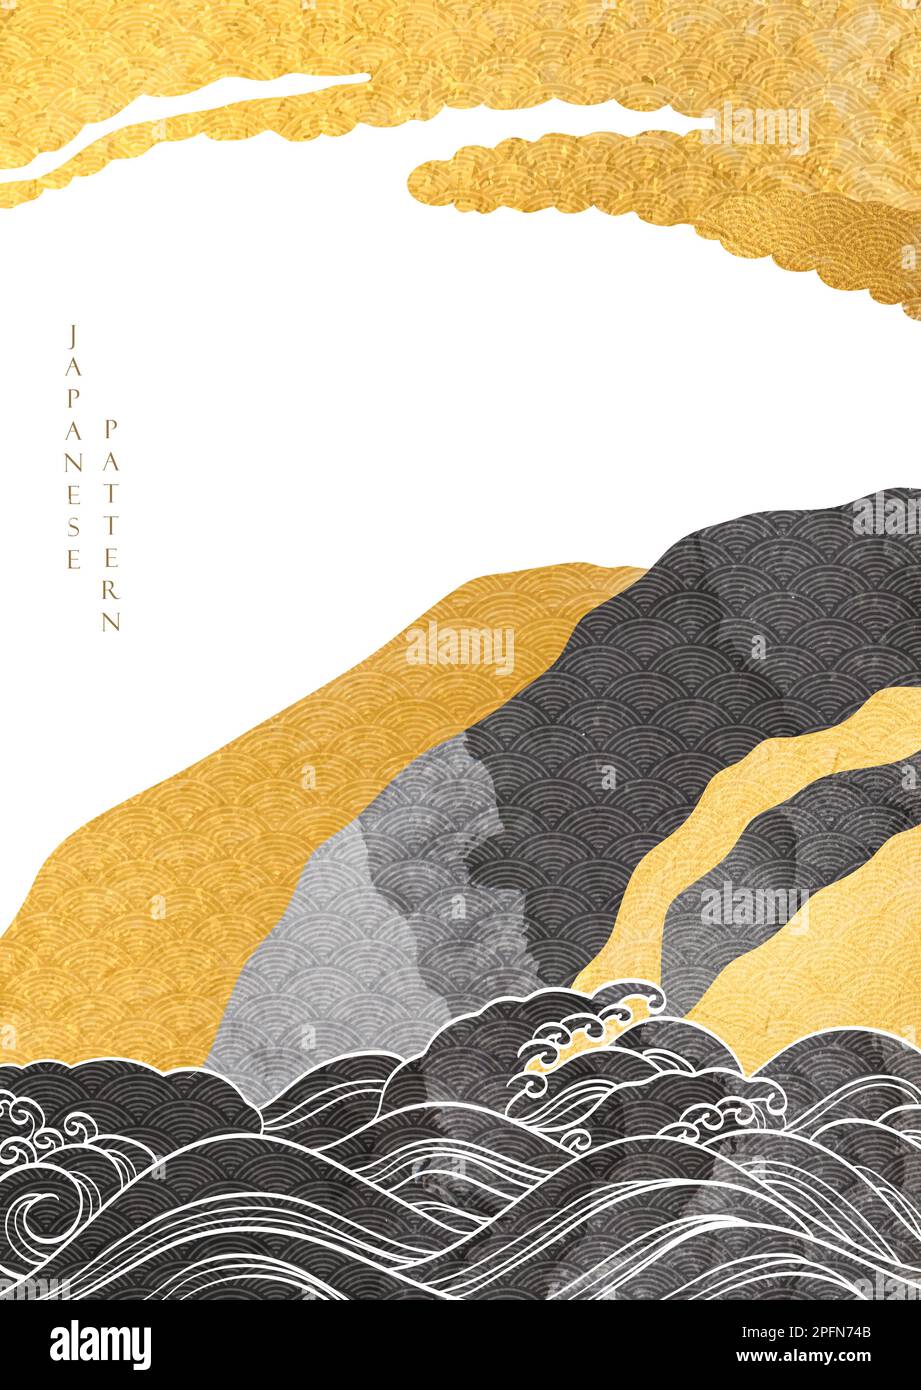 Chinesischer Hintergrund mit Gold- und schwarzem Texturvektor. Handgezeichnete Wellen im Vintage-Stil. Abstraktes Bannerdesign im Querformat. Stock Vektor